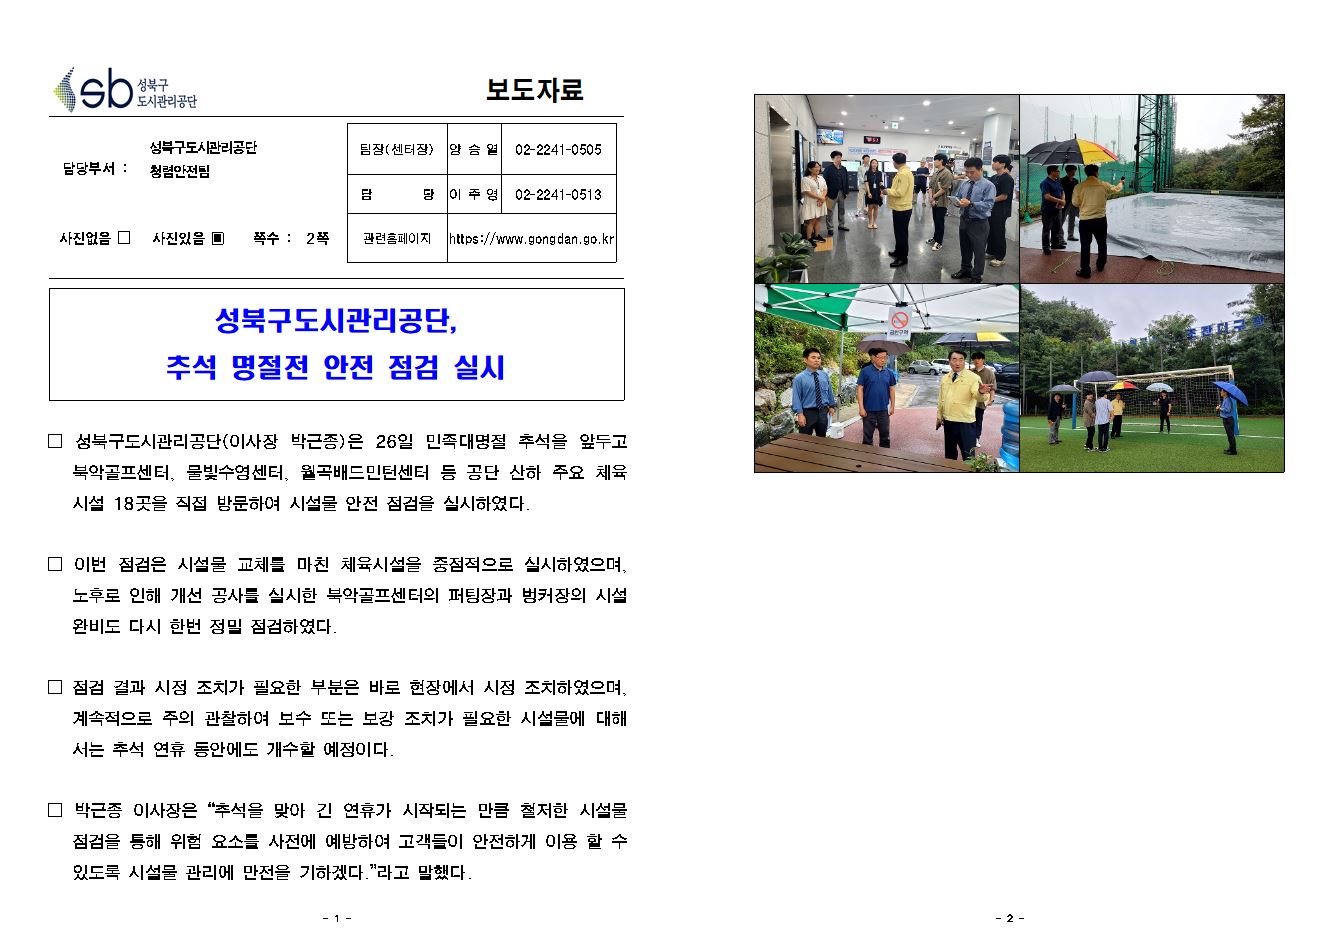 성북구도시관리공단, 추석 명절전 안전 점검 실시 보도자료